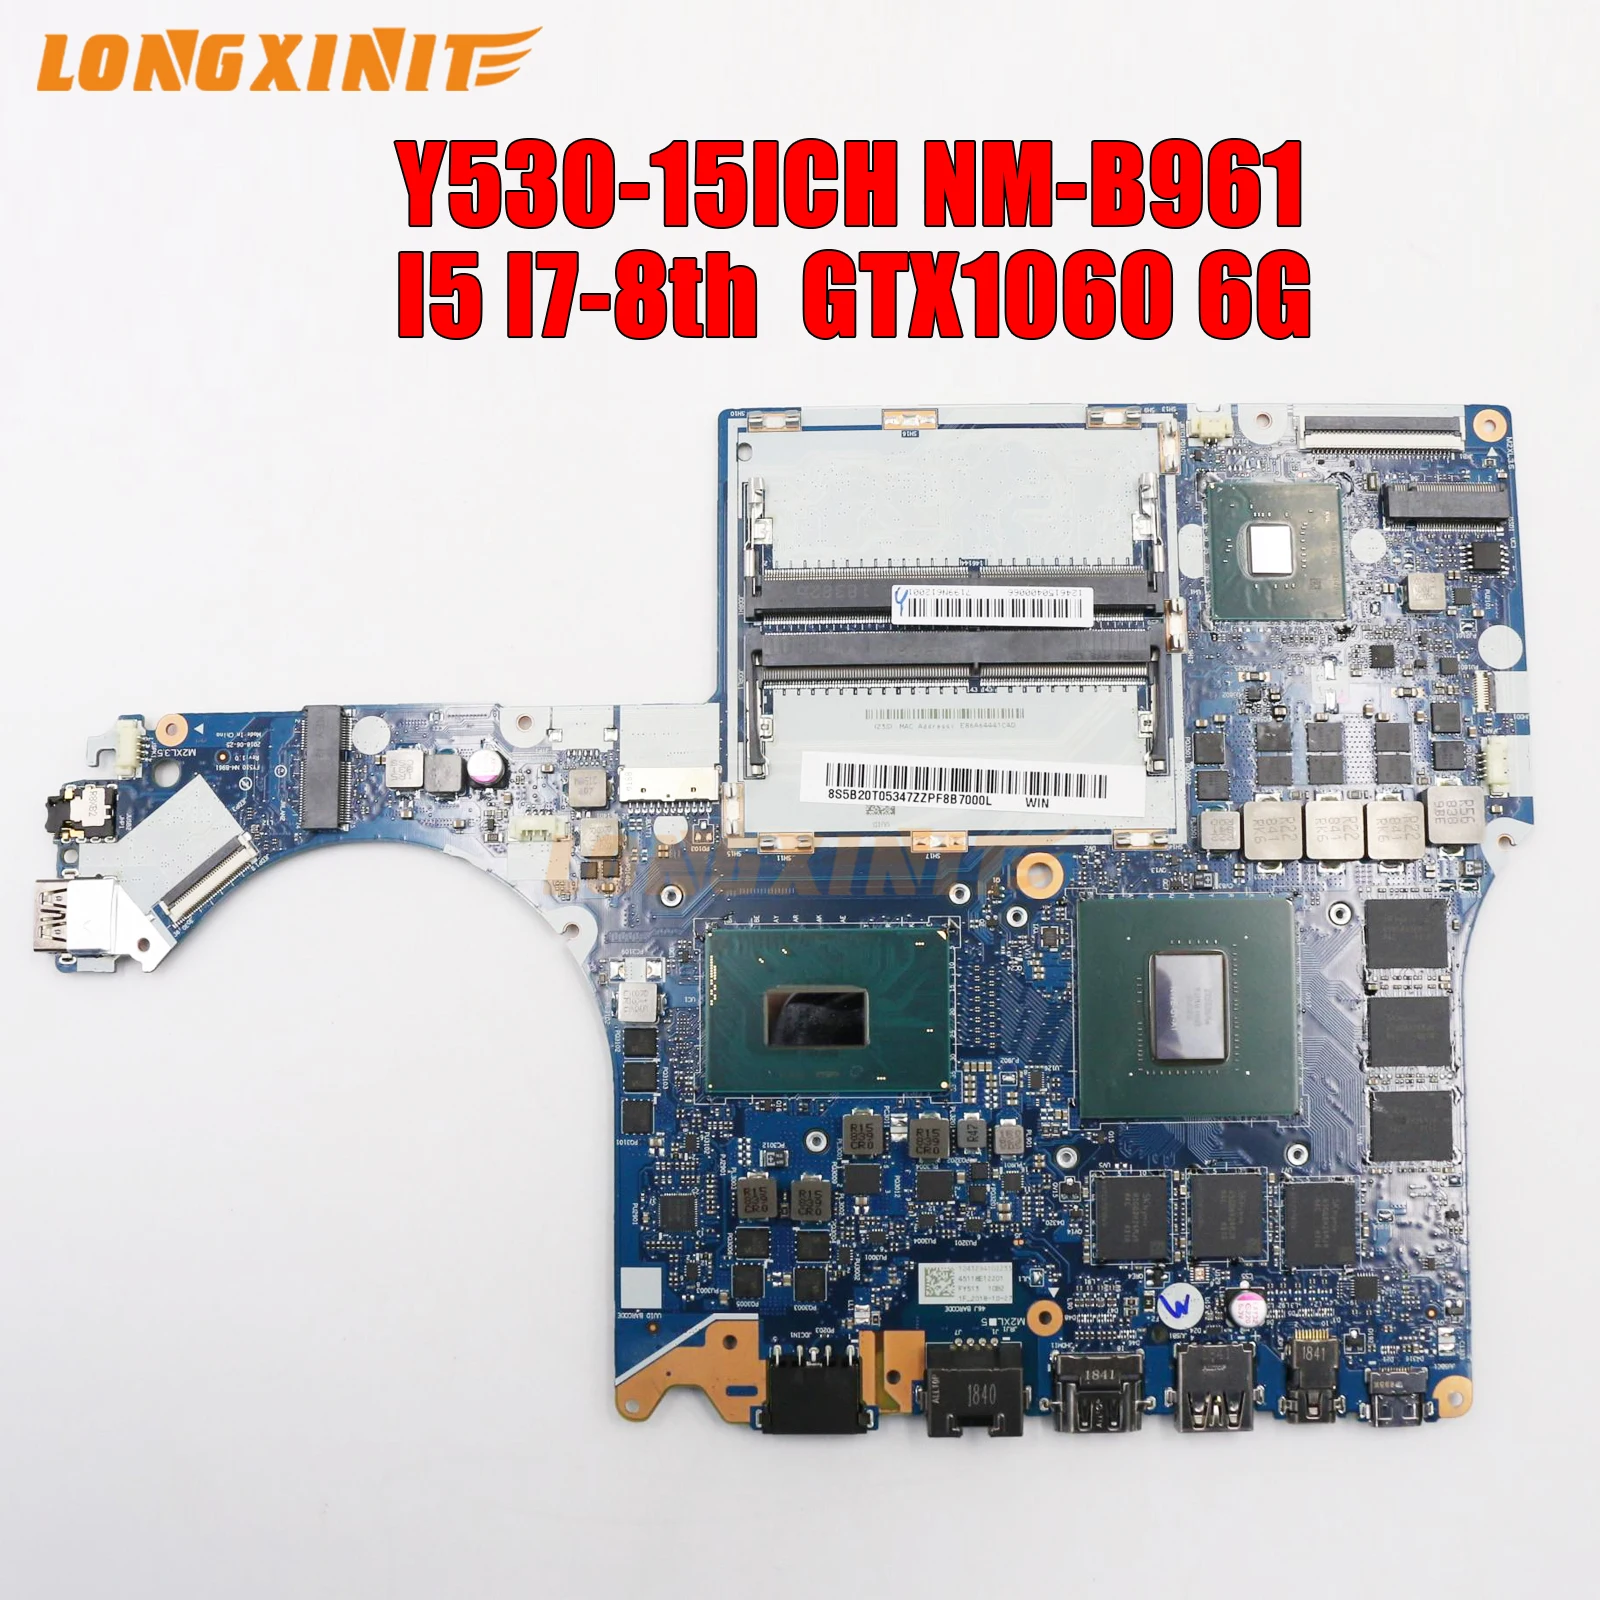 

NM-B961 For Lenovo Legion Y530-15ICH 2018 Laptop Motherboard I5-8300H I7-8750H CPU GTX1060 6GB GPU